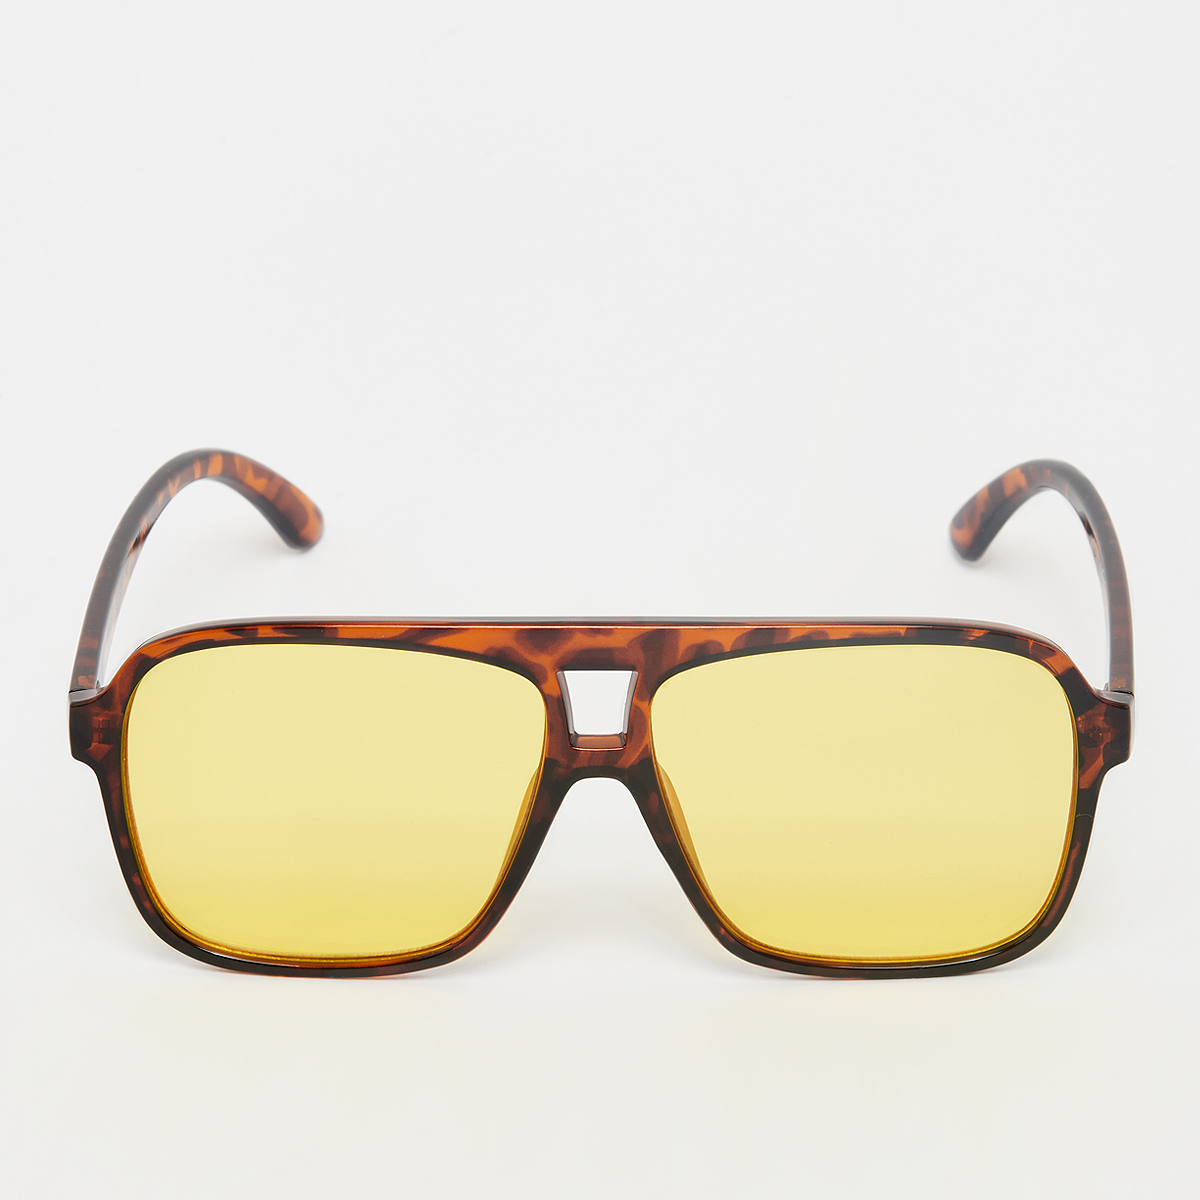 lunettes de soleil aviateur - jaune, brune